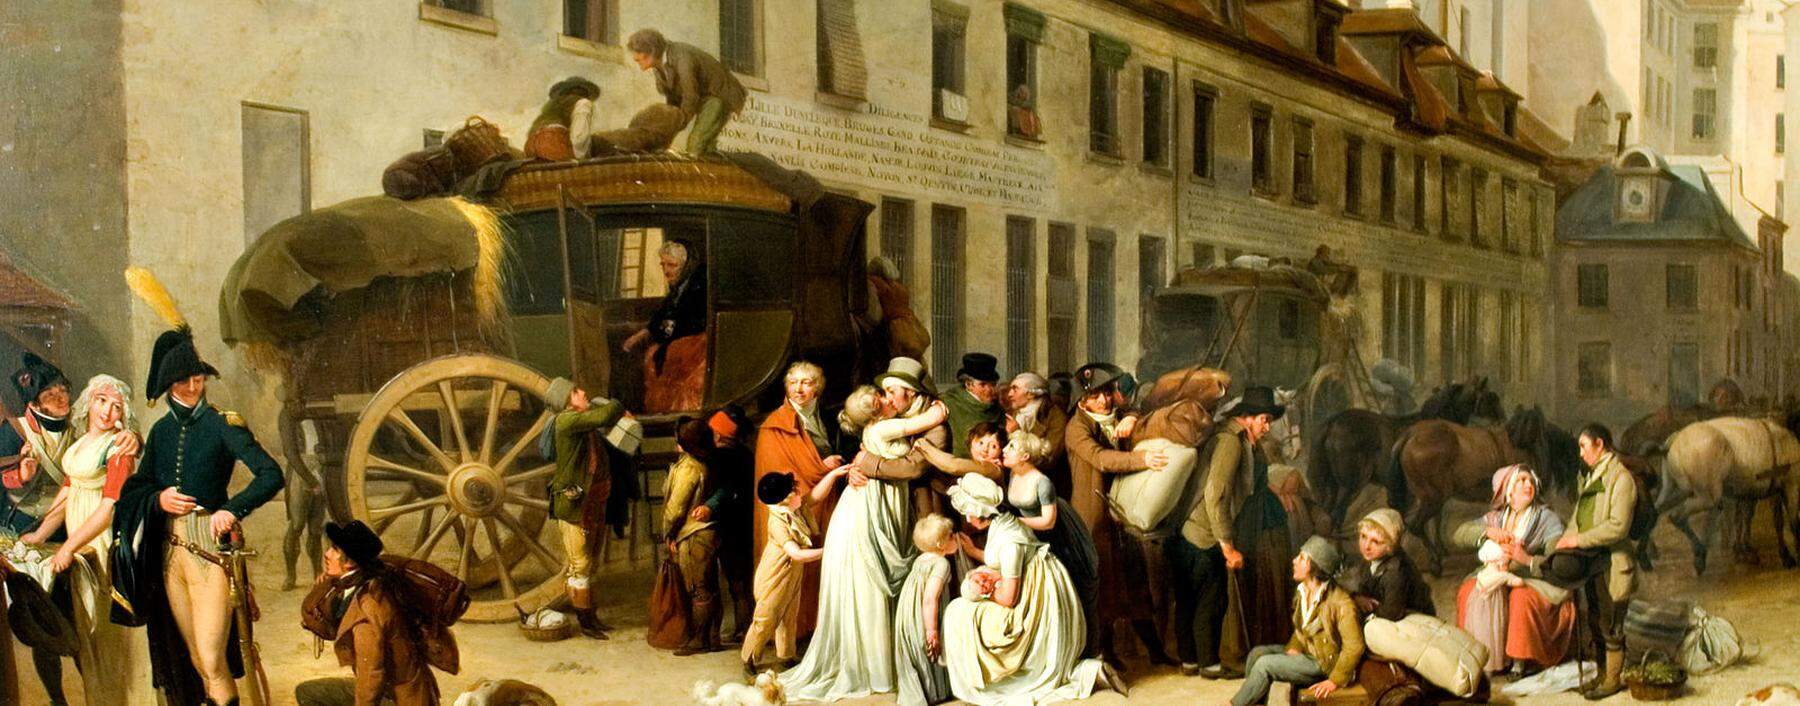 Als „verrückte, holpernde, dreckige Mistkarren“ wurden vor 1800 die ungefederten Kutschen beschimpft. „Die Ankunft der Postkutsche“ des Malers Louis-Léopold Boilly stammt aus 1803.  